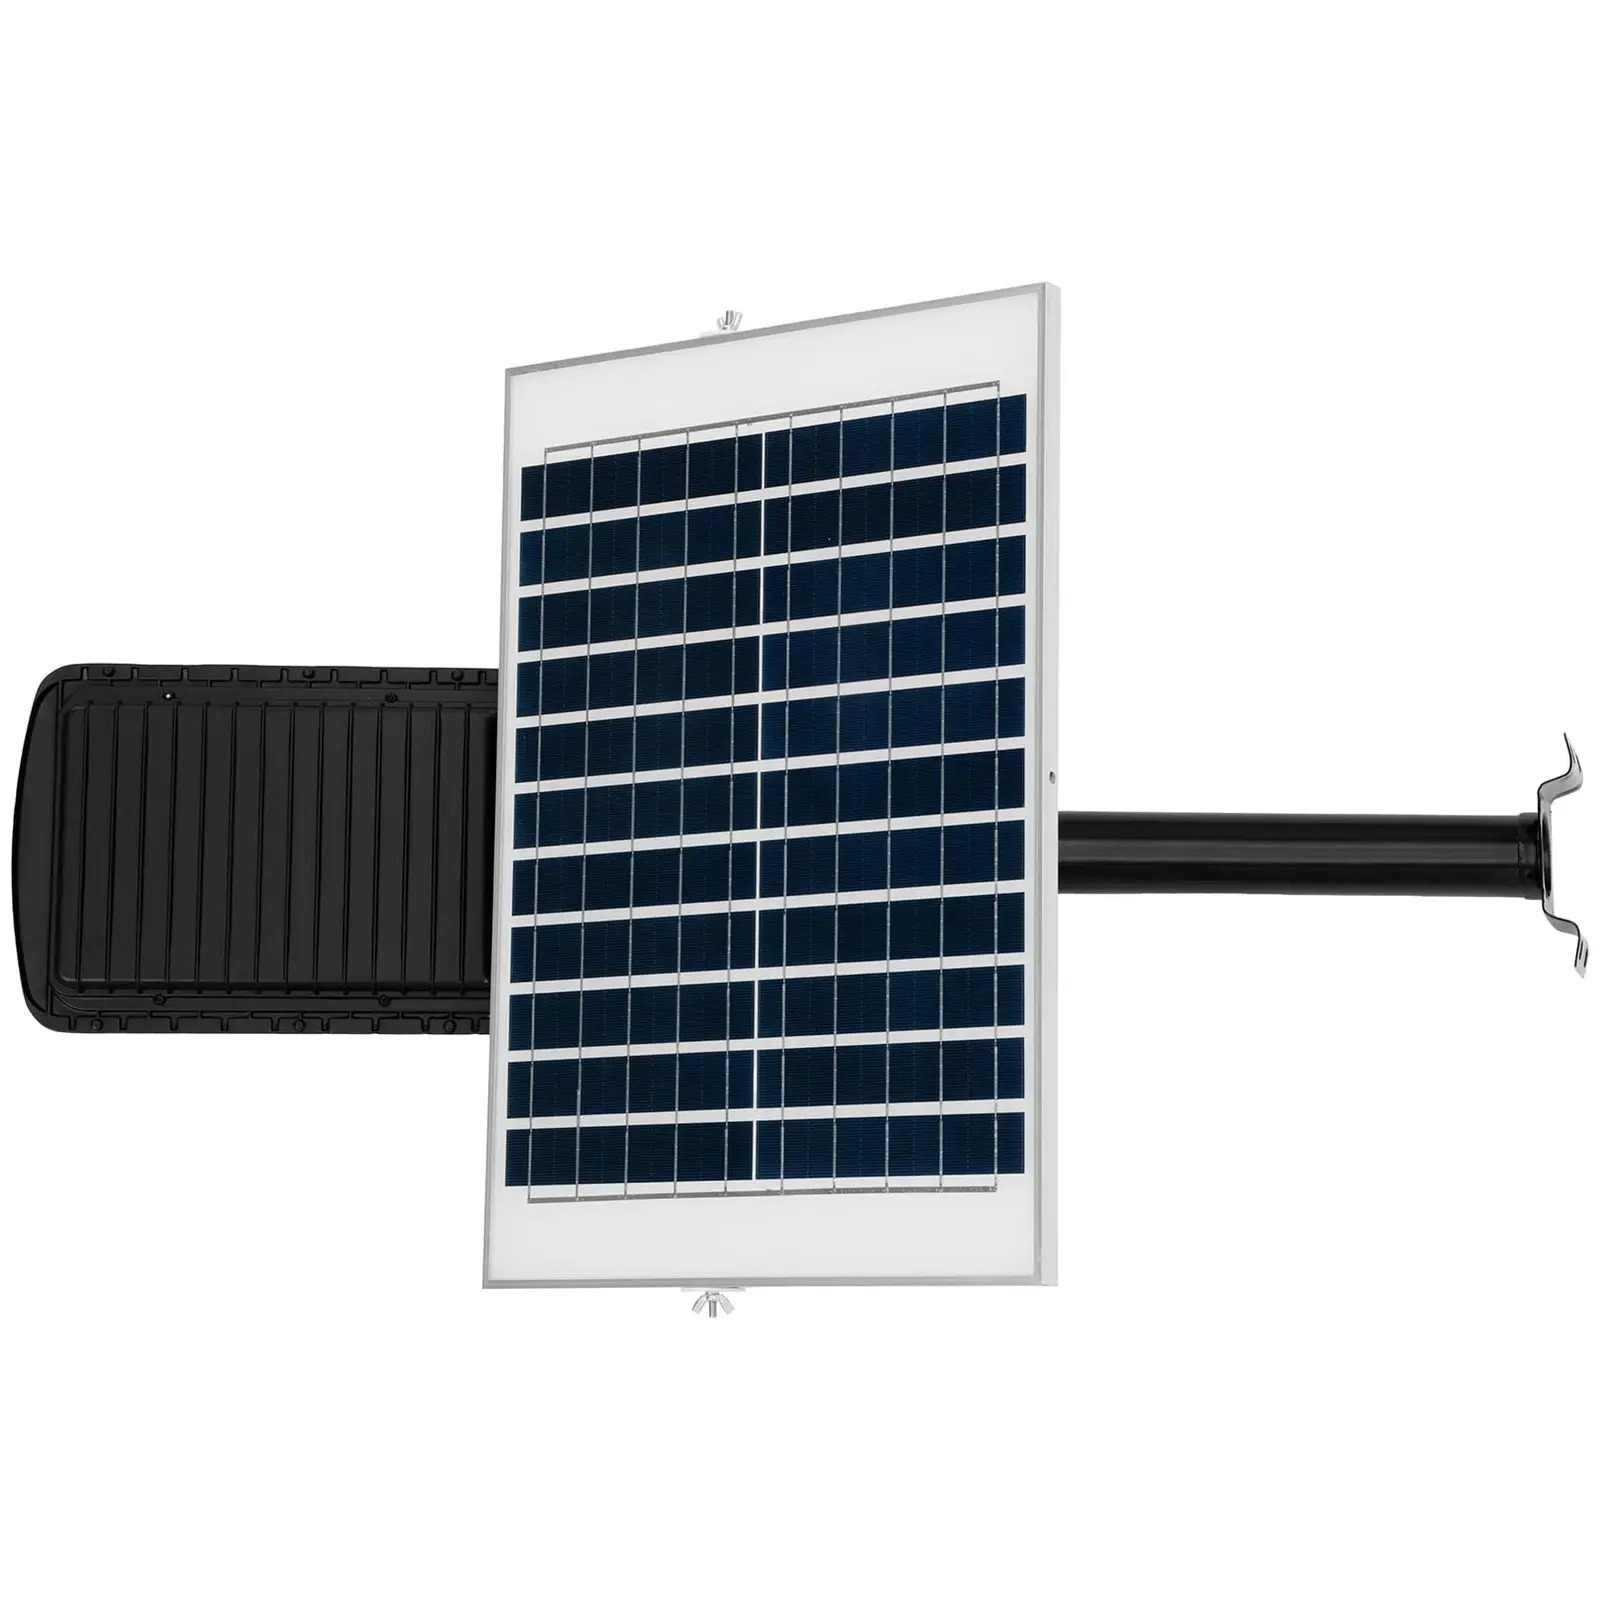 Solar-Außenleuchte - 100 W - 6000 - 6500 K - 14 - 16 h - IP65